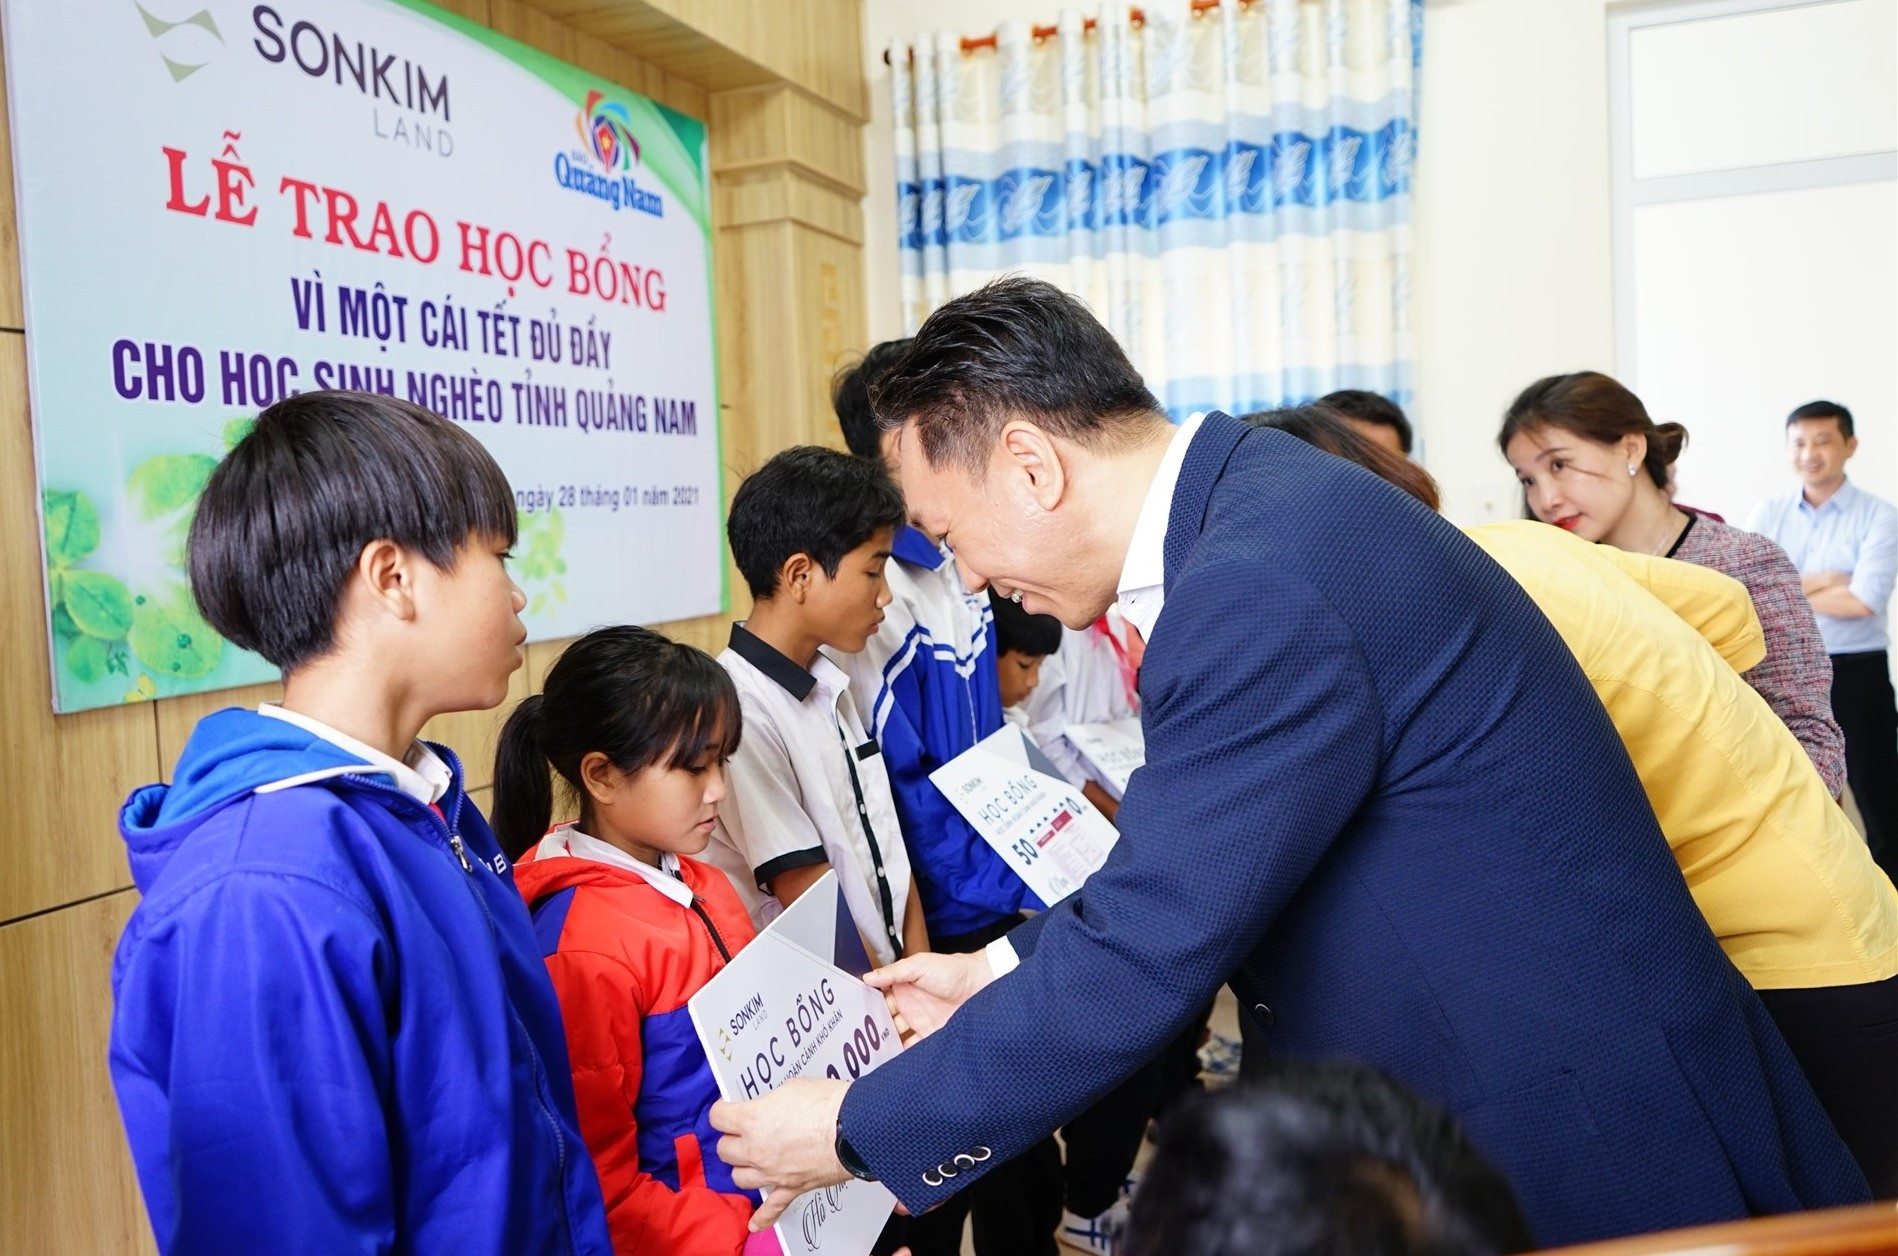 Ông Andy Han Suk Jung, Tổng Giám Đốc SonKim Land trao học bổng cho các em học sinh. Ảnh: Q.H